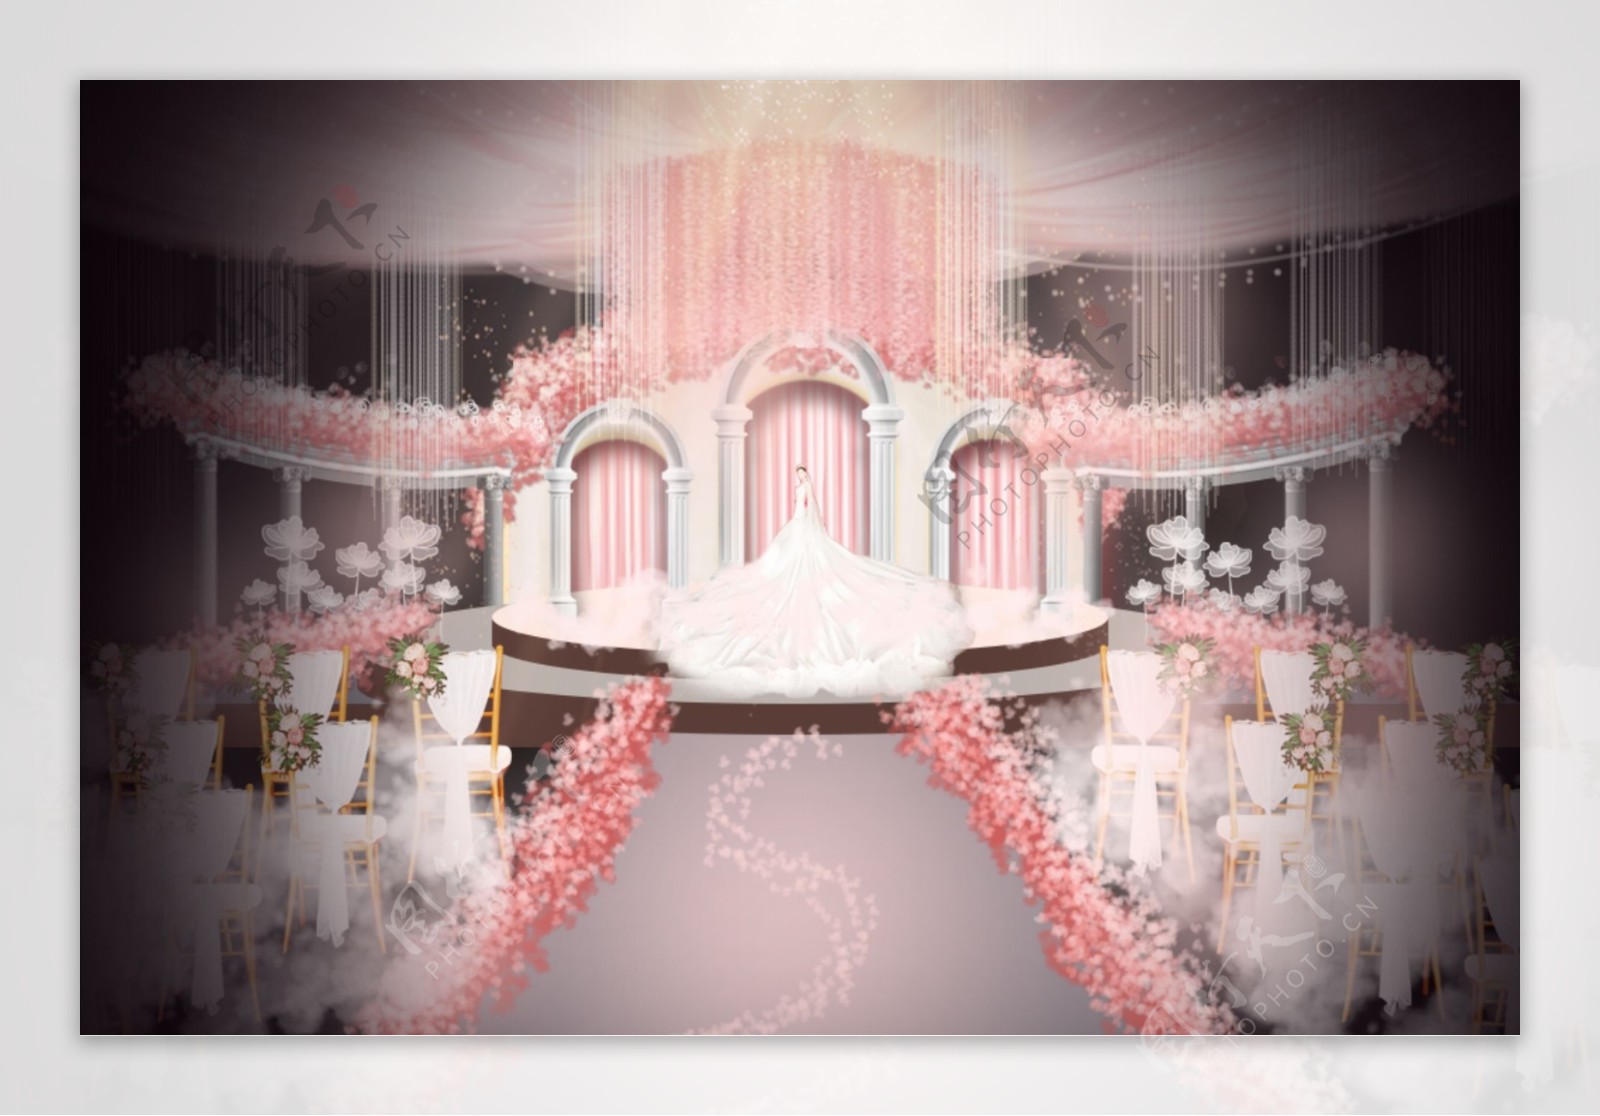 粉色欧式浪漫婚礼舞台整体效果图